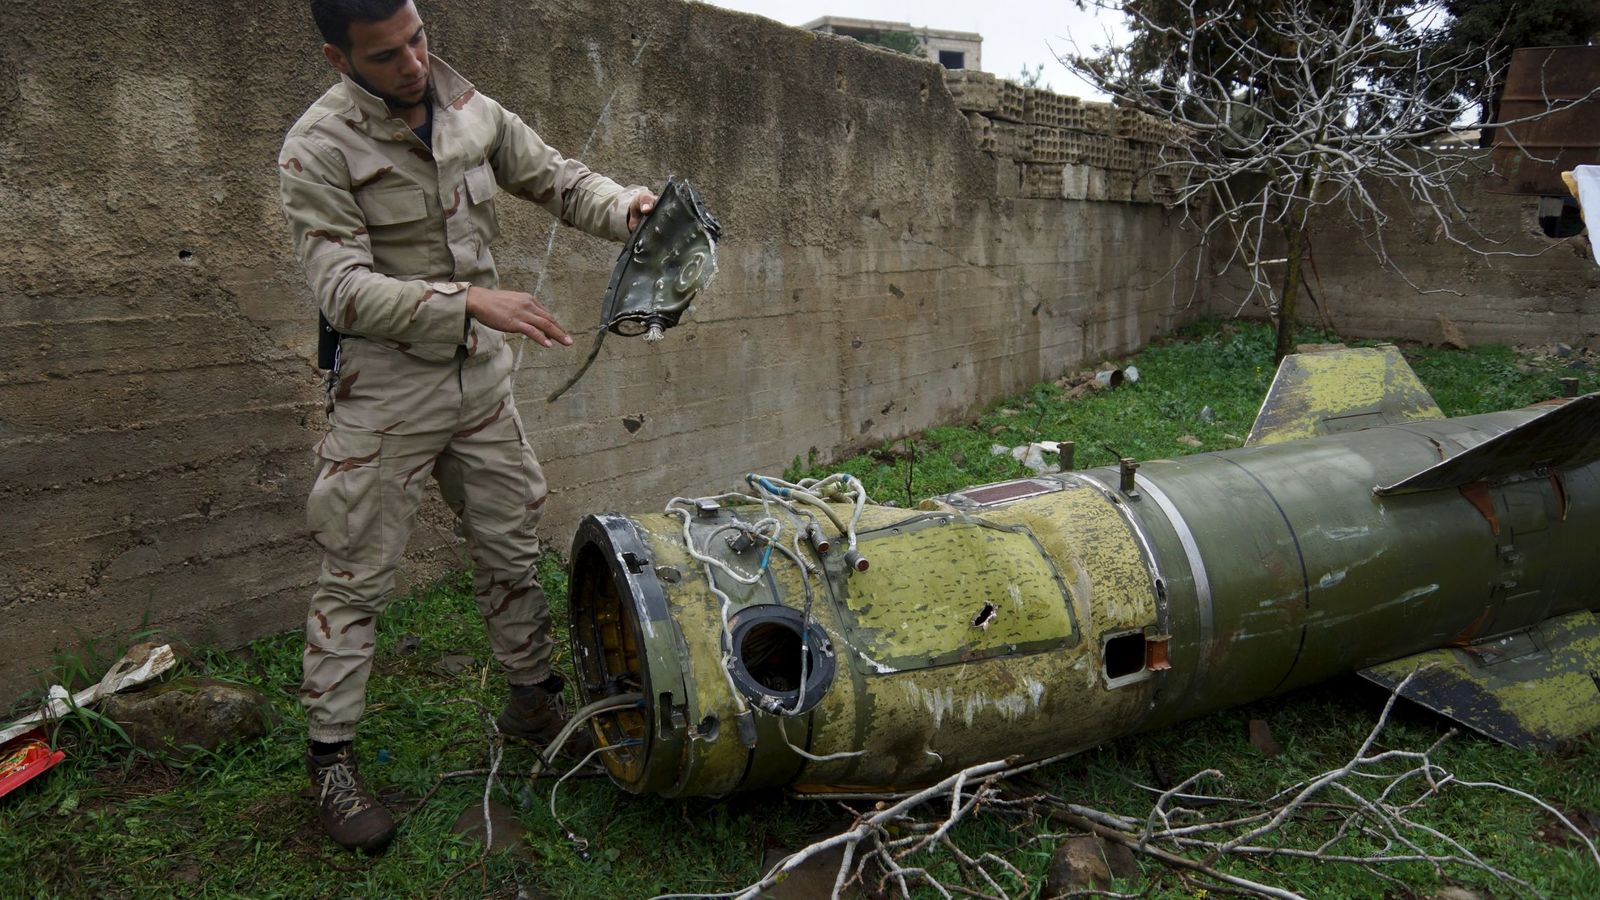 Foto: Un rebelde sirio inspecciona una pieza de un misil caído en la región de Deraa, al sur del país, el 22 de febrero de 2016 (Reuters)